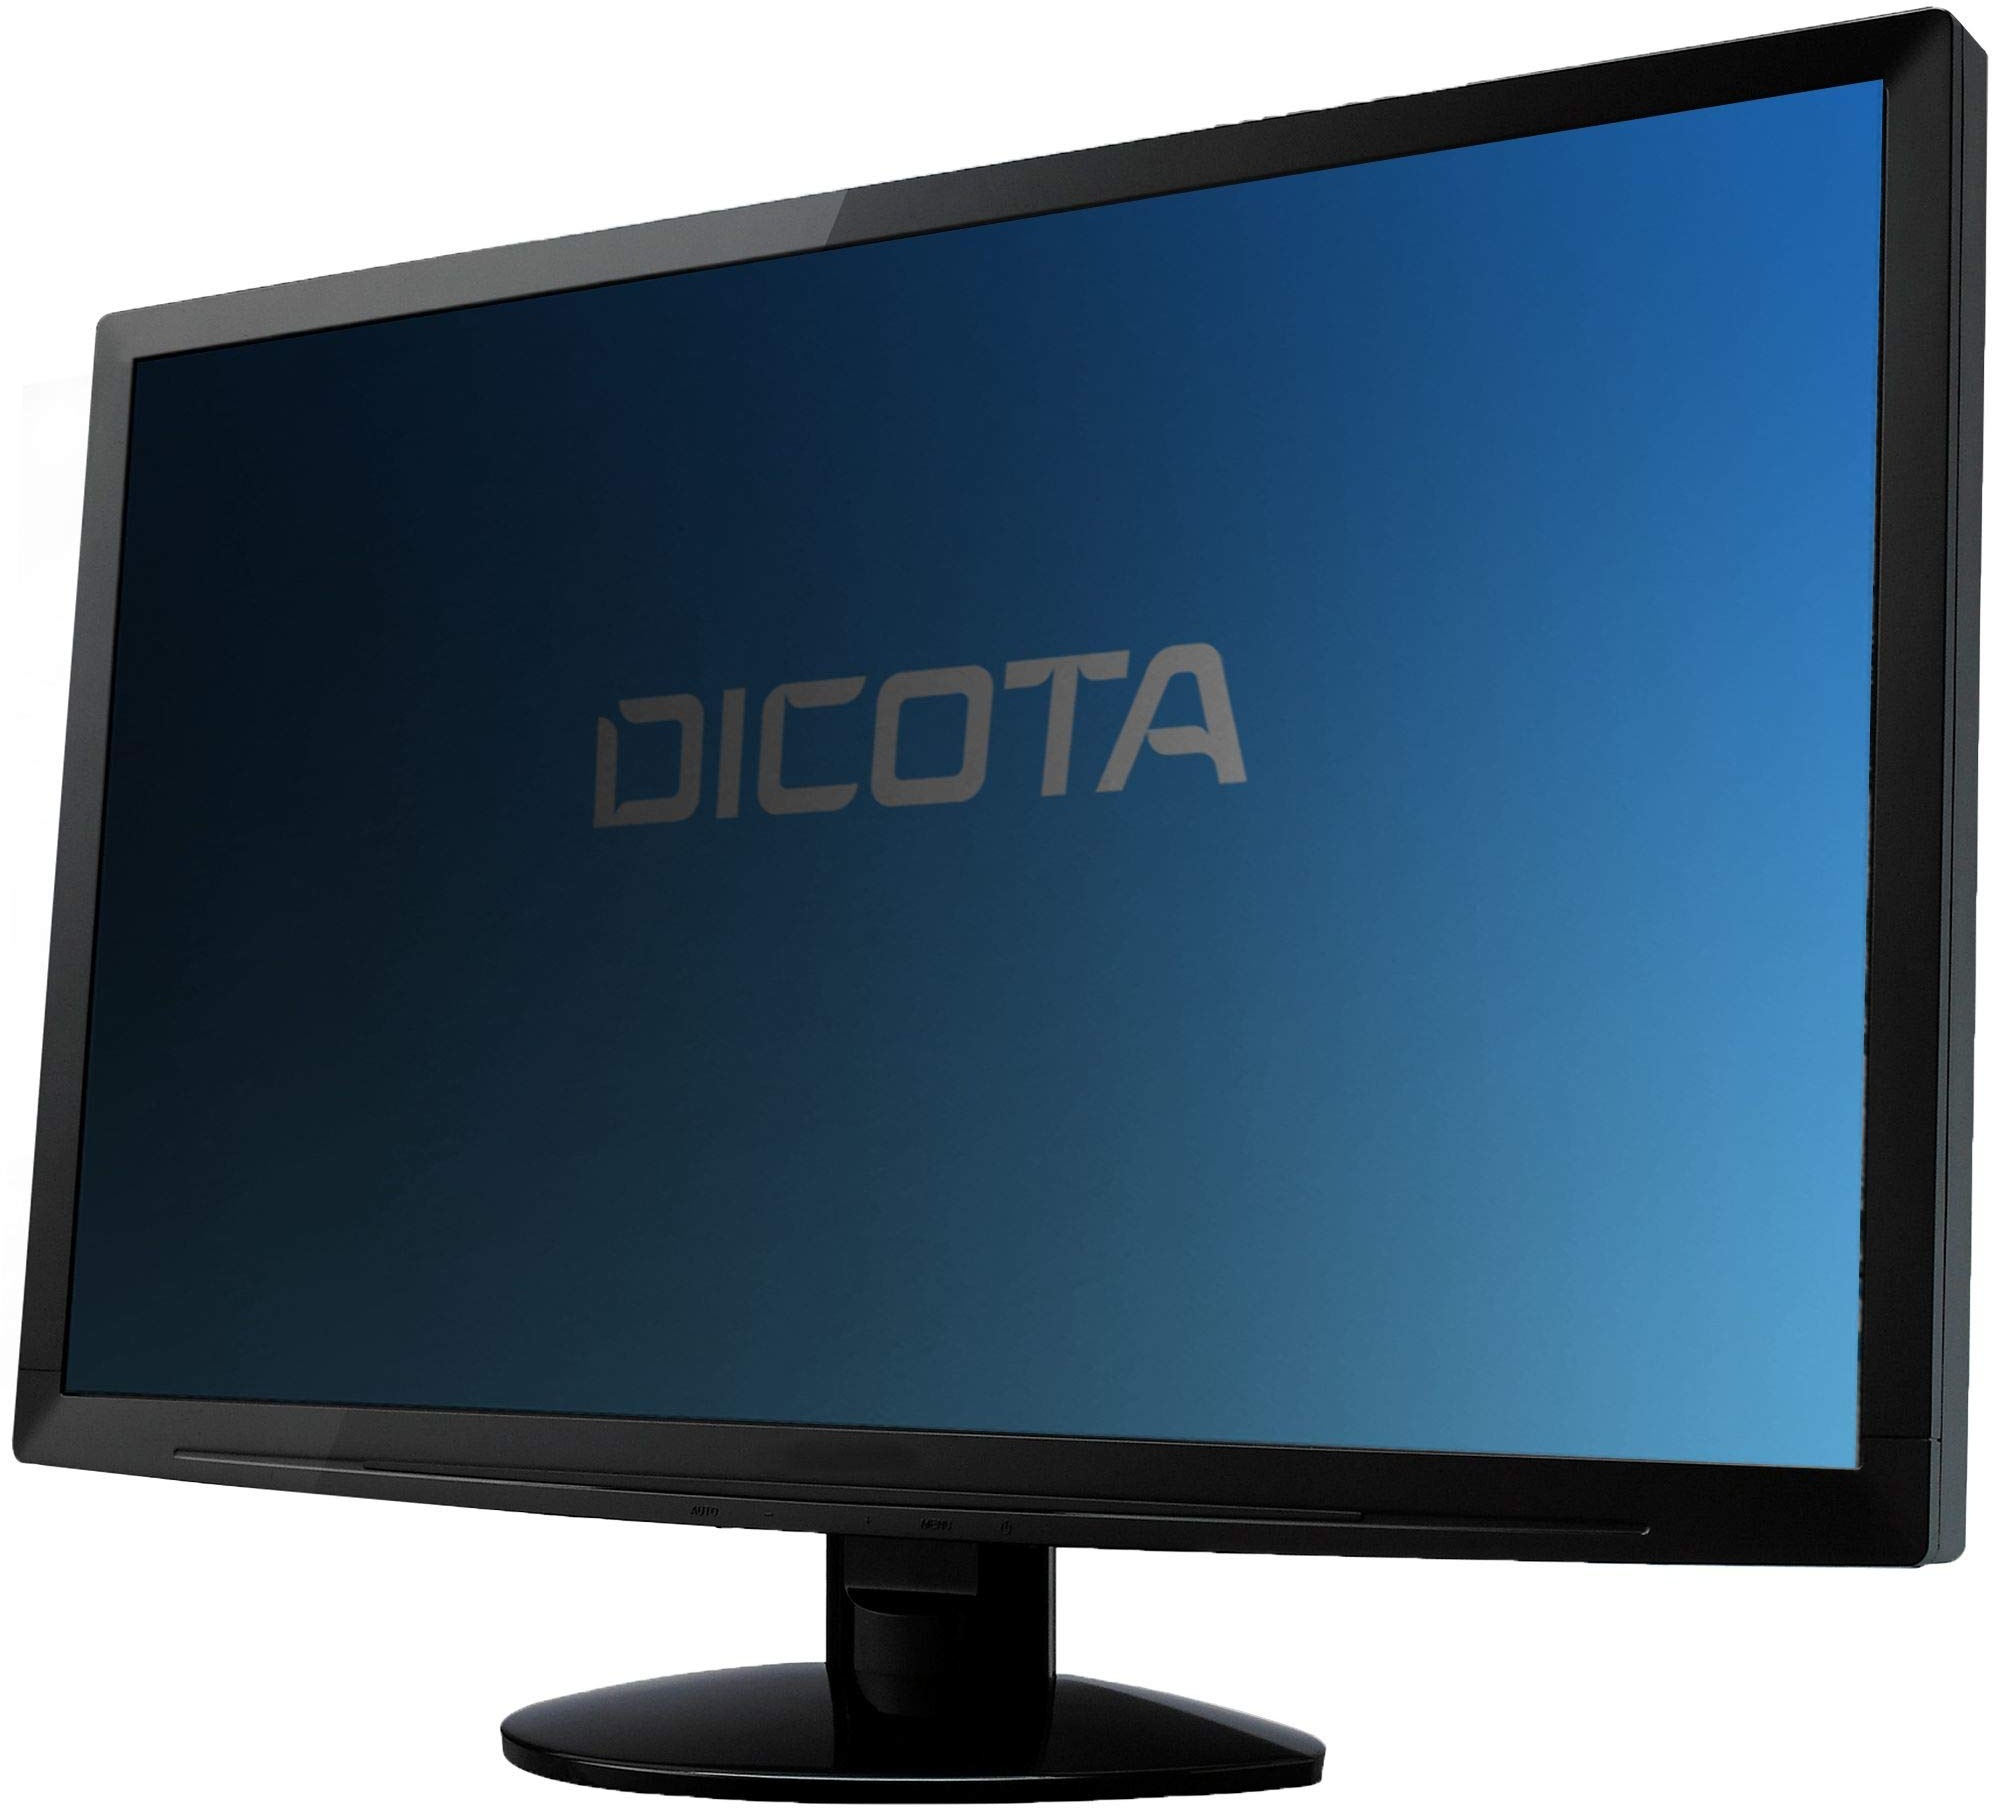 Dicota D31546 Secret 2-Way Blickschutzfolie für HP Monitor E223 transparent rot